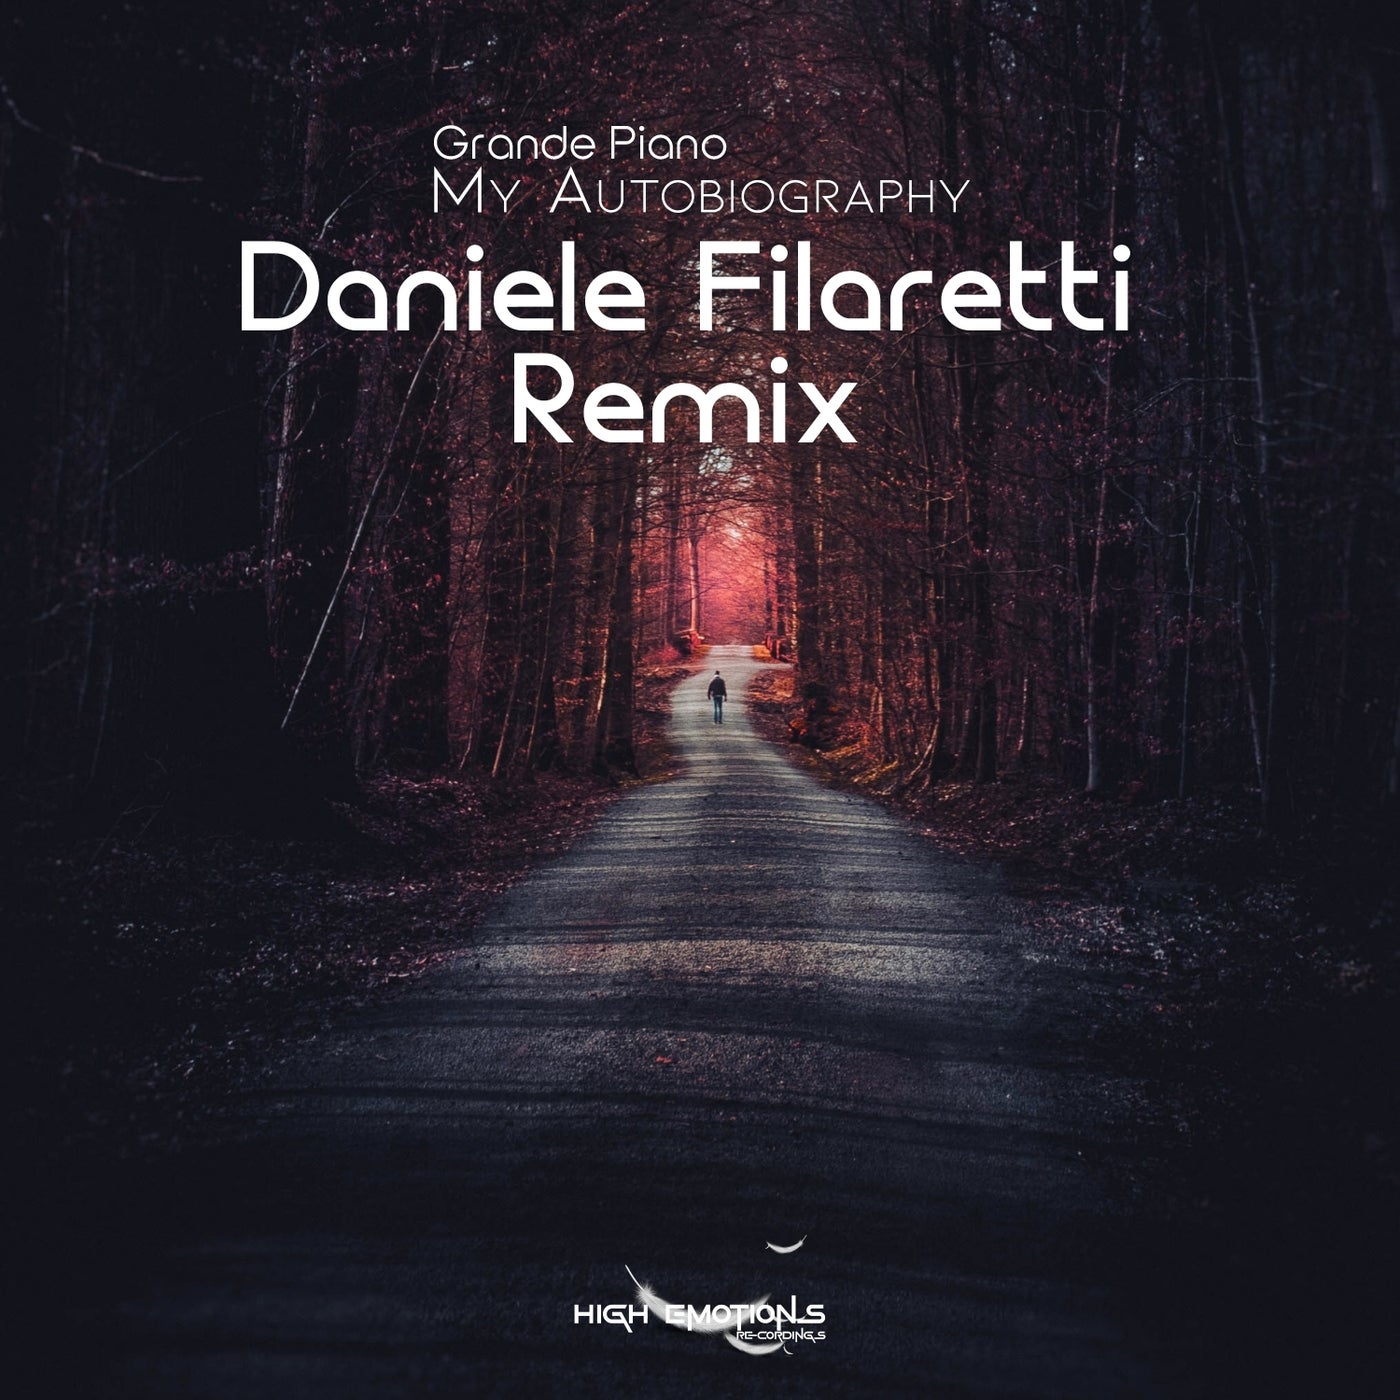 My Autobiography (Daniele Filaretti Remix)